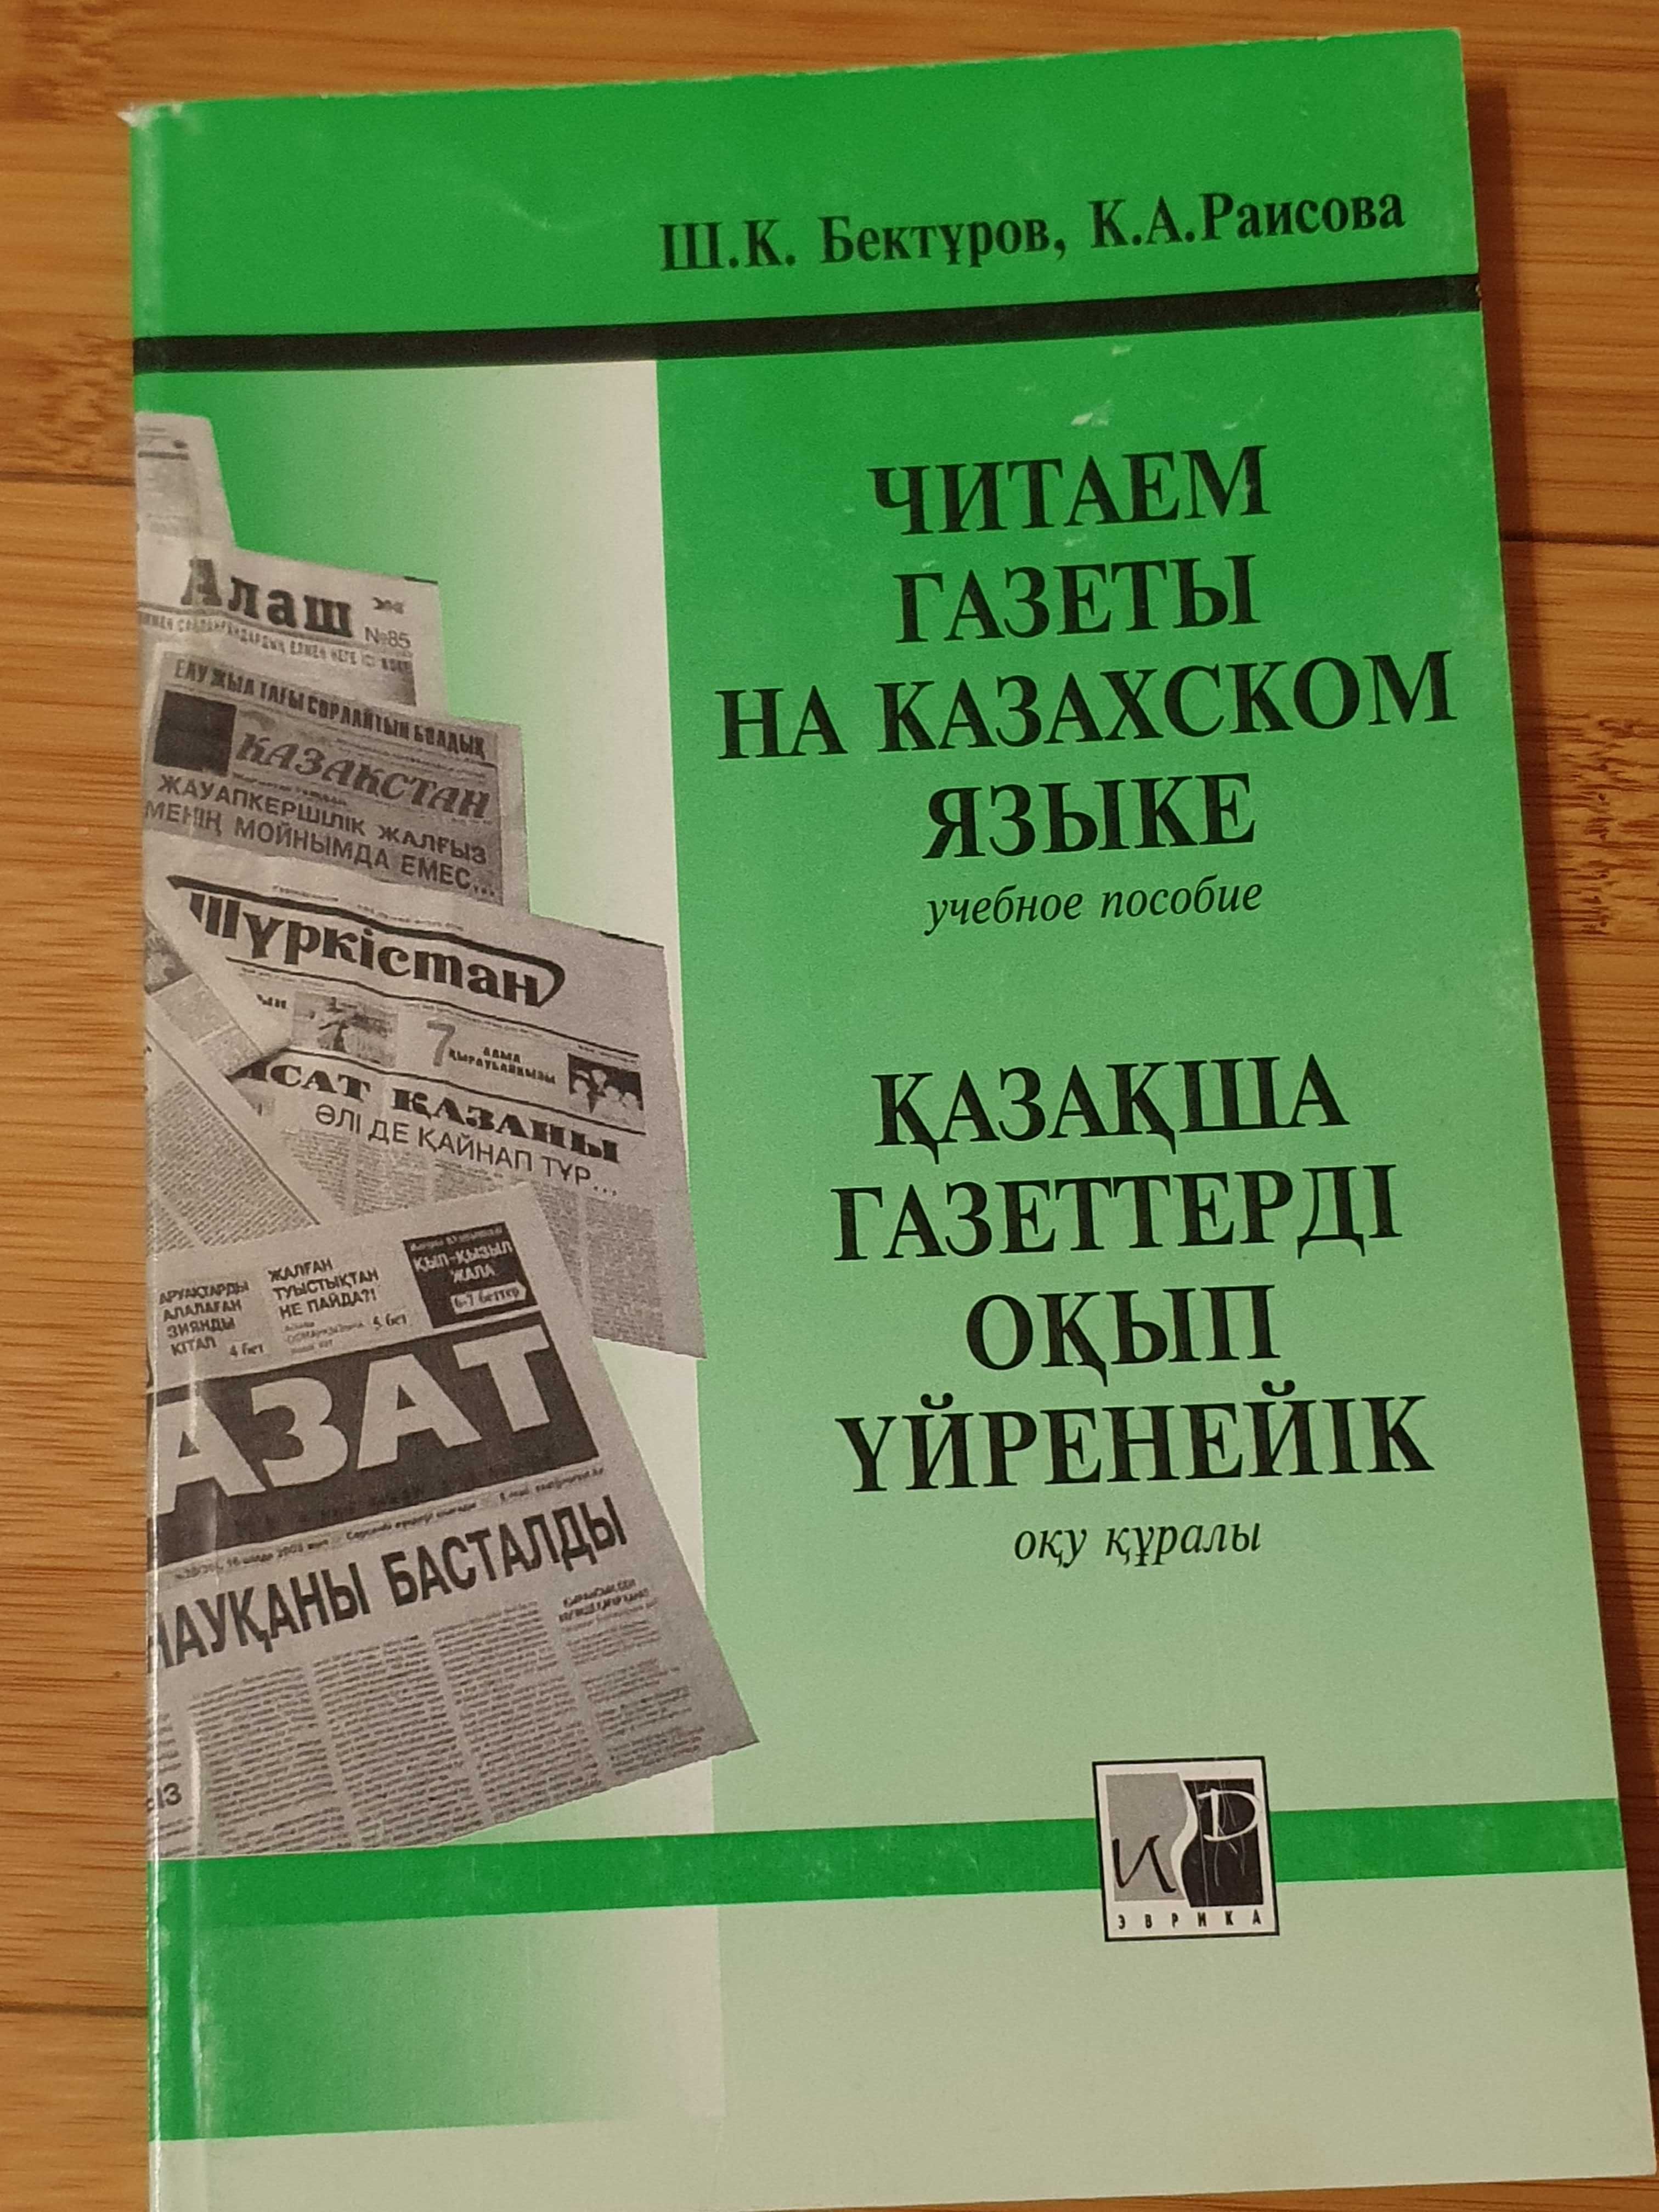 Учебники казахского языка